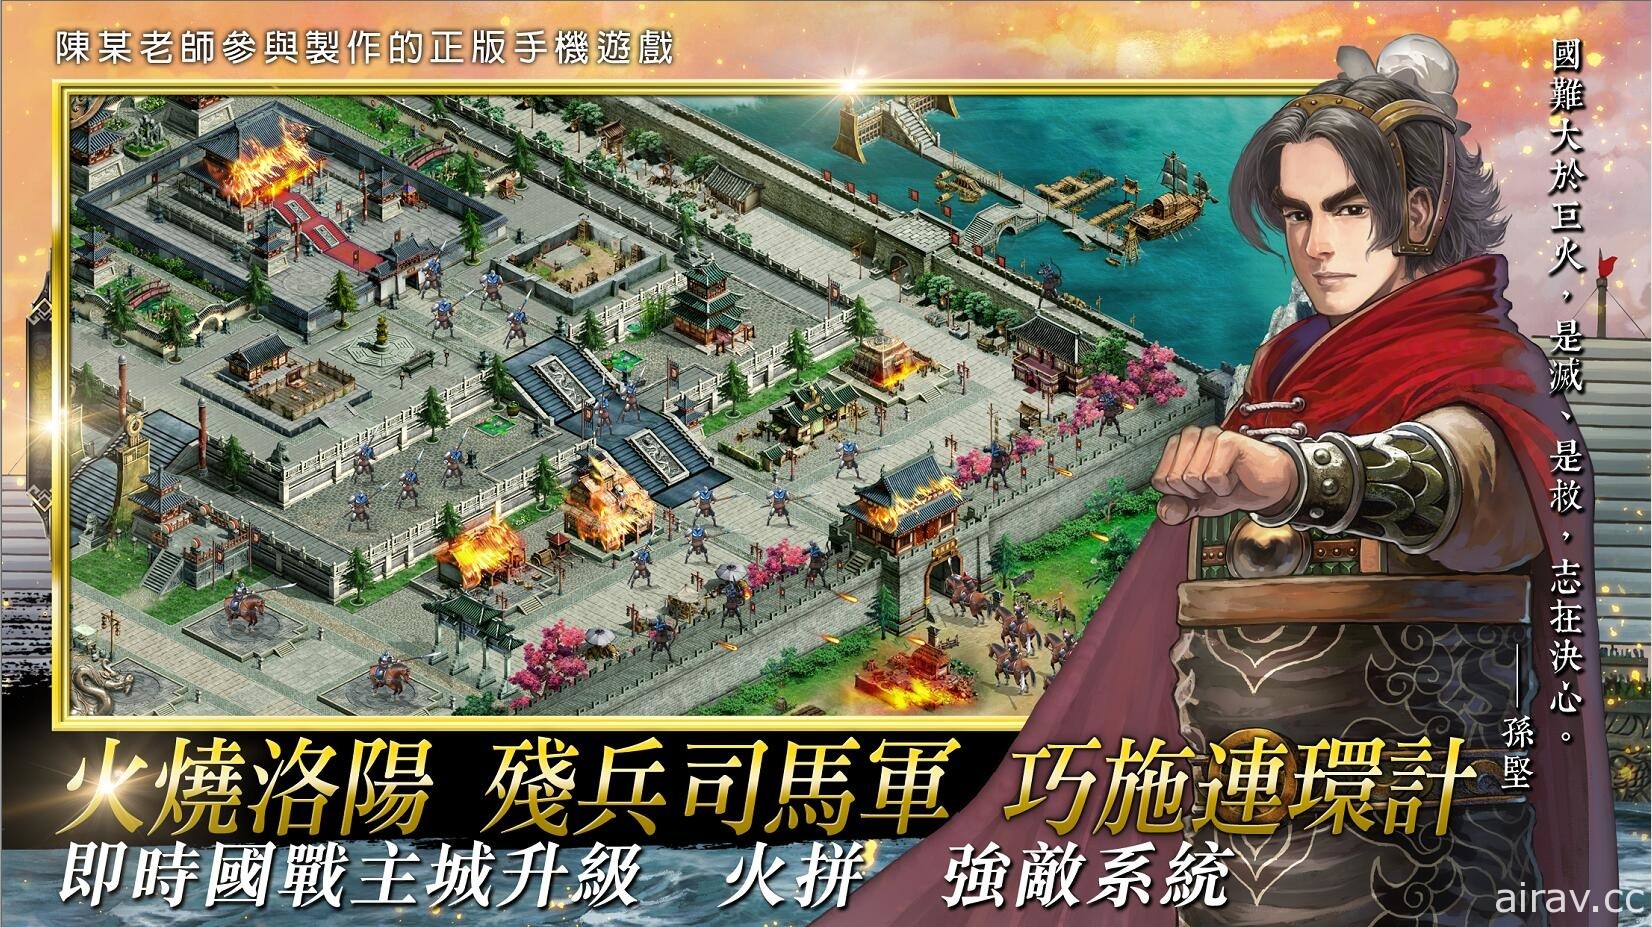 《火鳳燎原》作者「陳某」參與製作 城戰策略遊戲《新火鳳燎原 亂世英雄》展開事前登錄